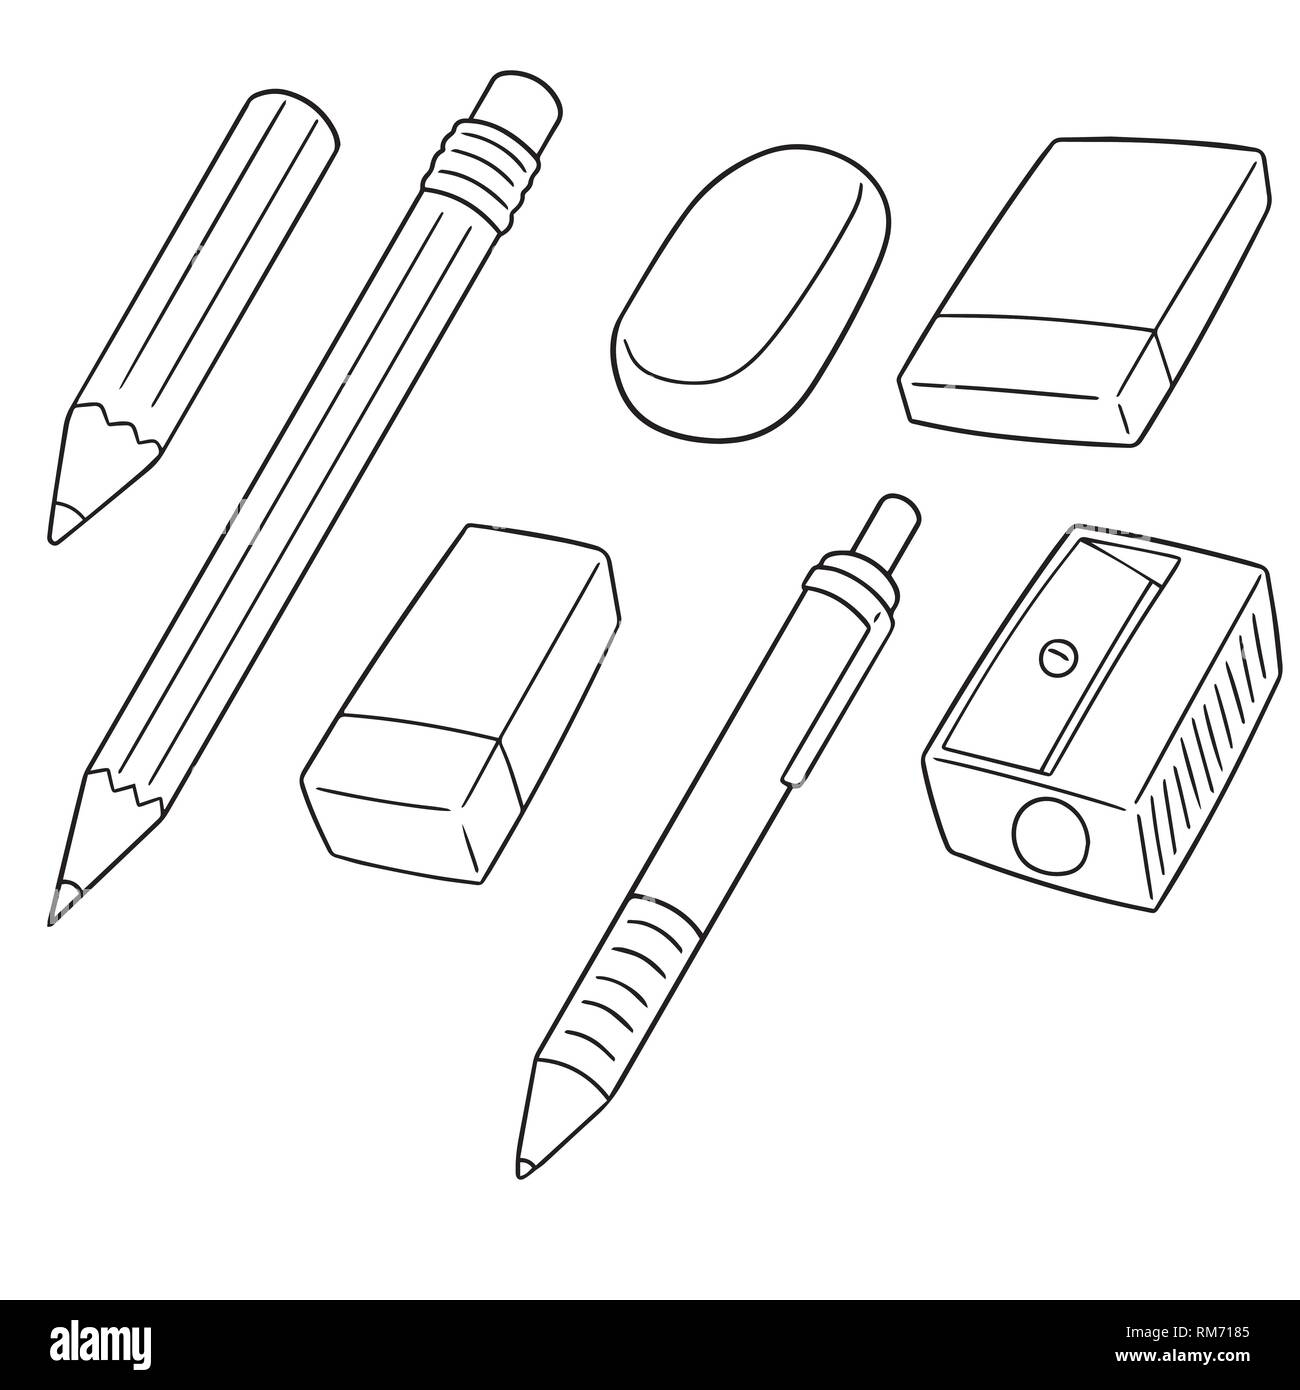 Ручка, карандаш линейка ластик раскраска для детей